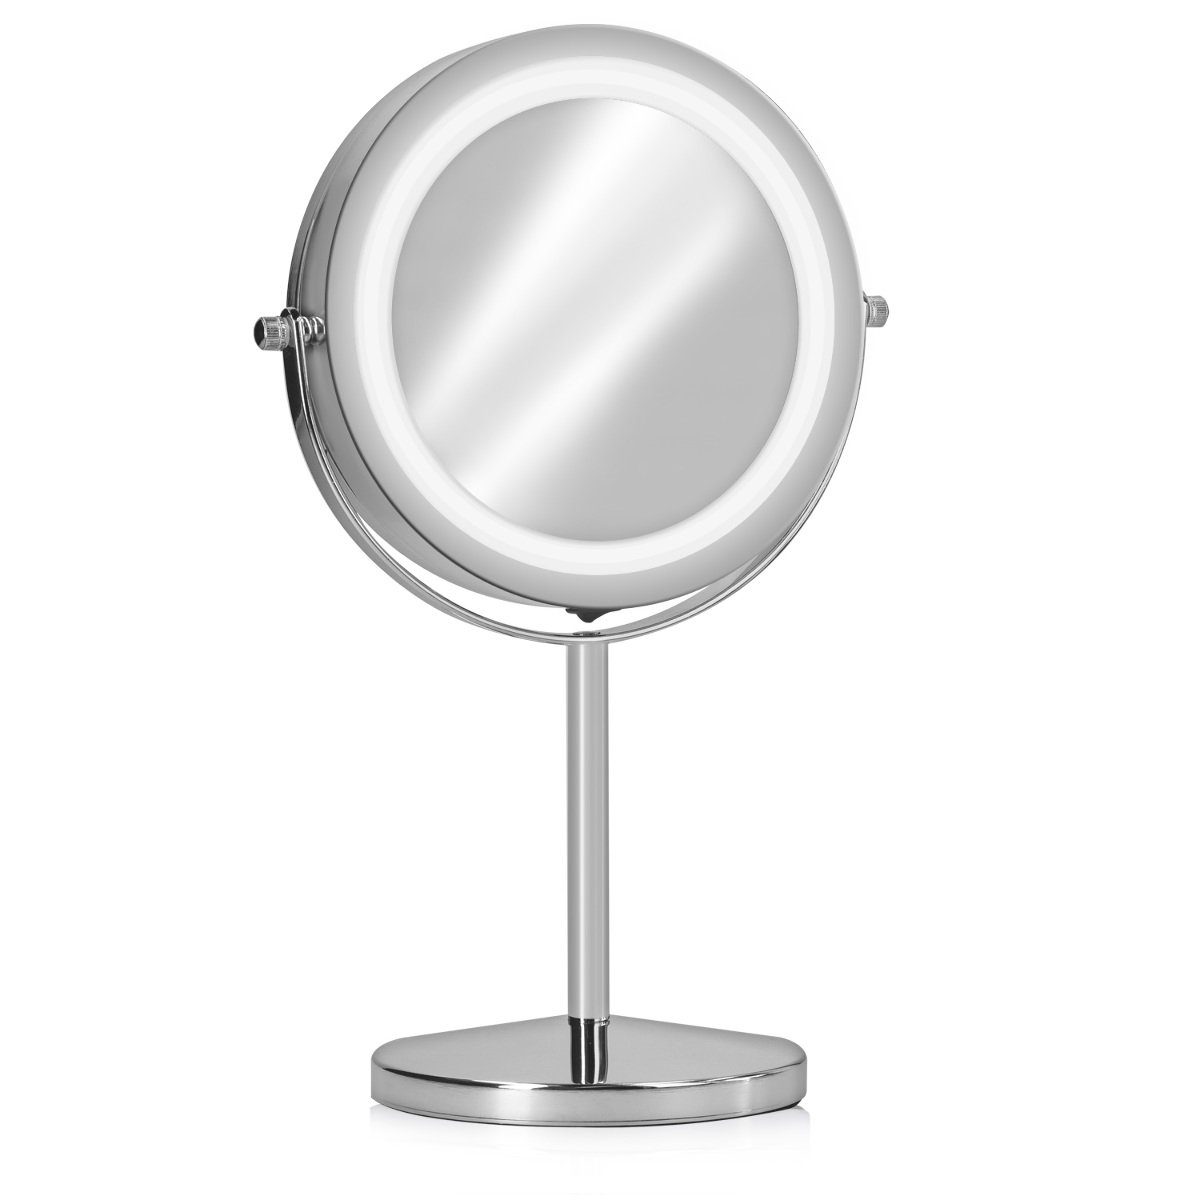 Navaris LED-Lichtspiegel Kosmetikspiegel mit Beleuchtung - 7-fache Vergrößerung (1-St)